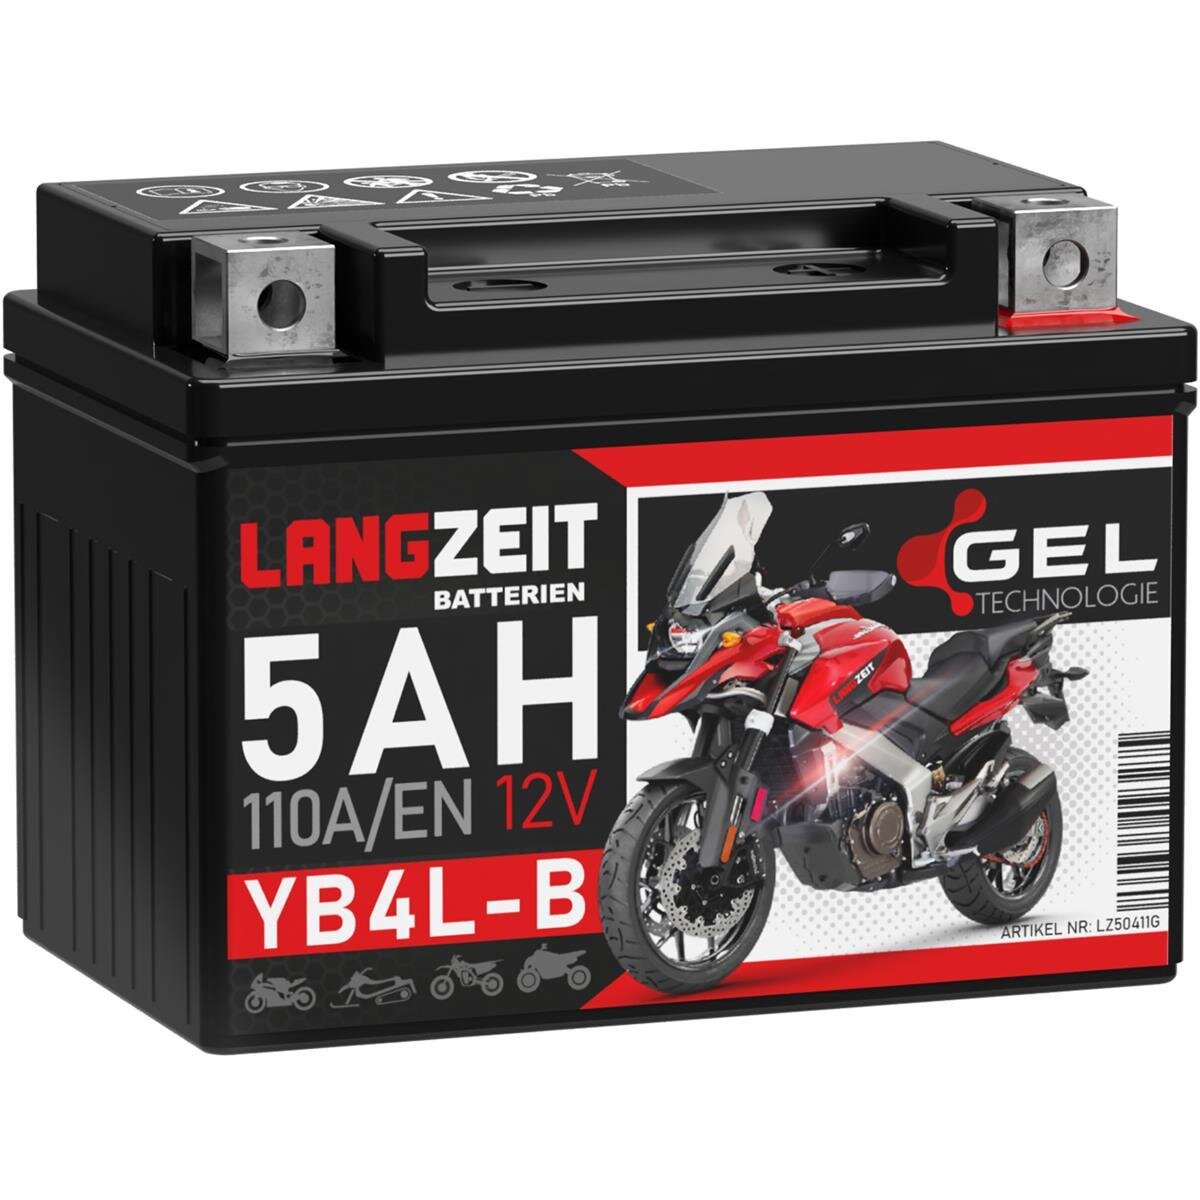 Langzeit Gel Motorradbatterie YB4L-B 5Ah 12V, 19,90 €